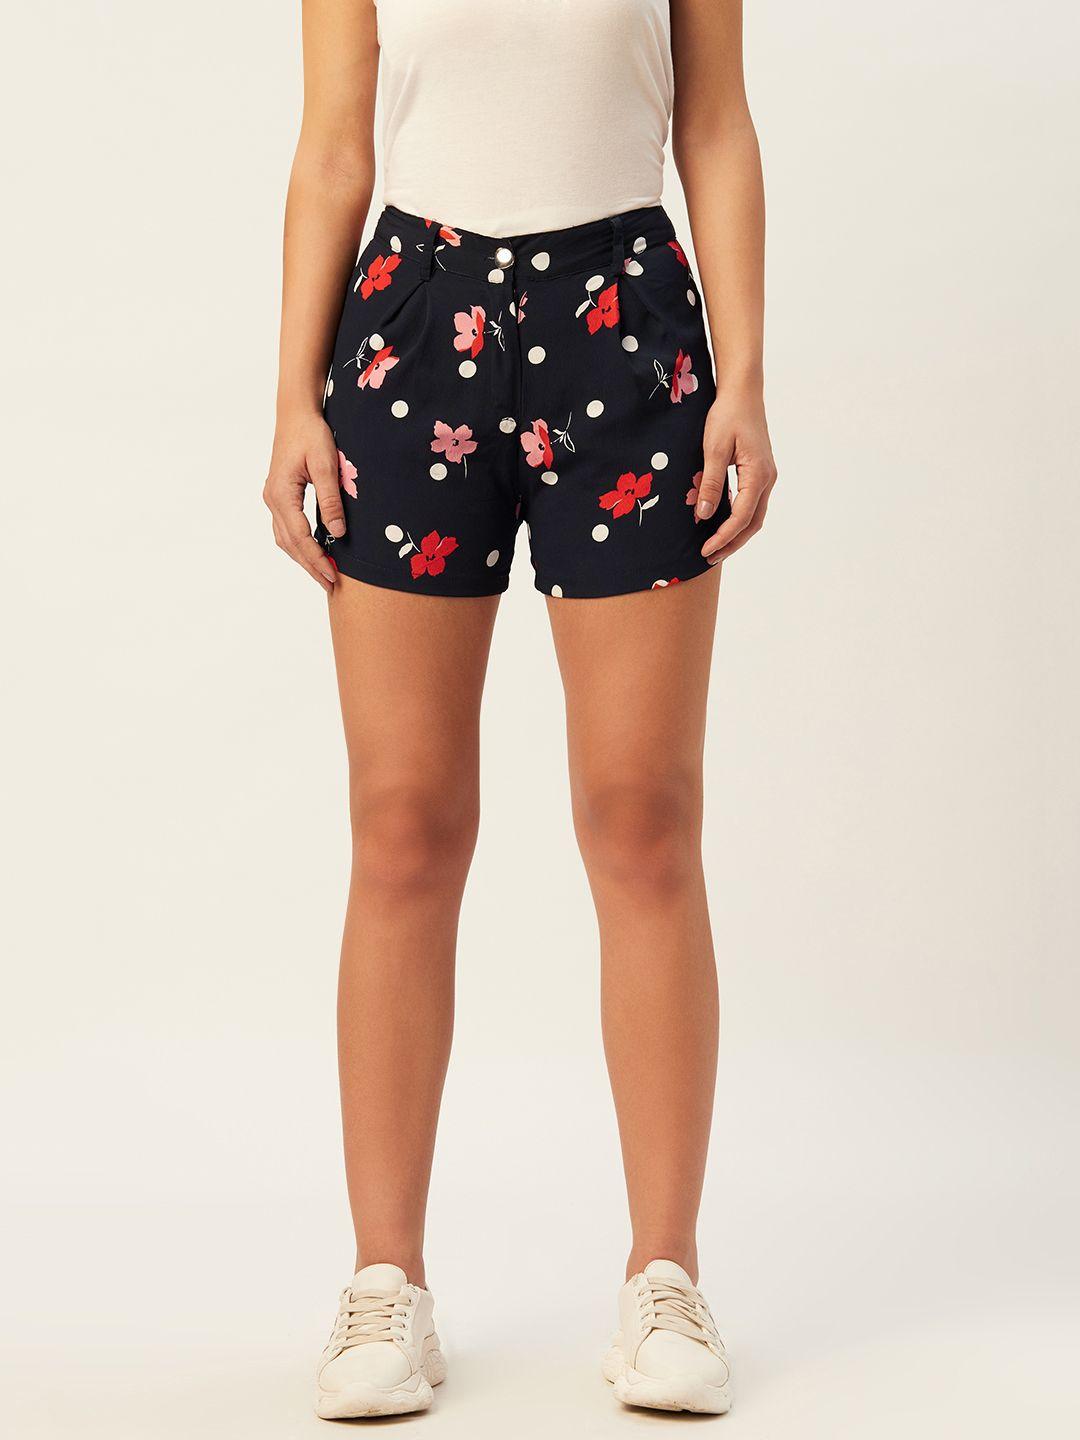 belle fille women navy blue & red floral printed regular fit regular shorts